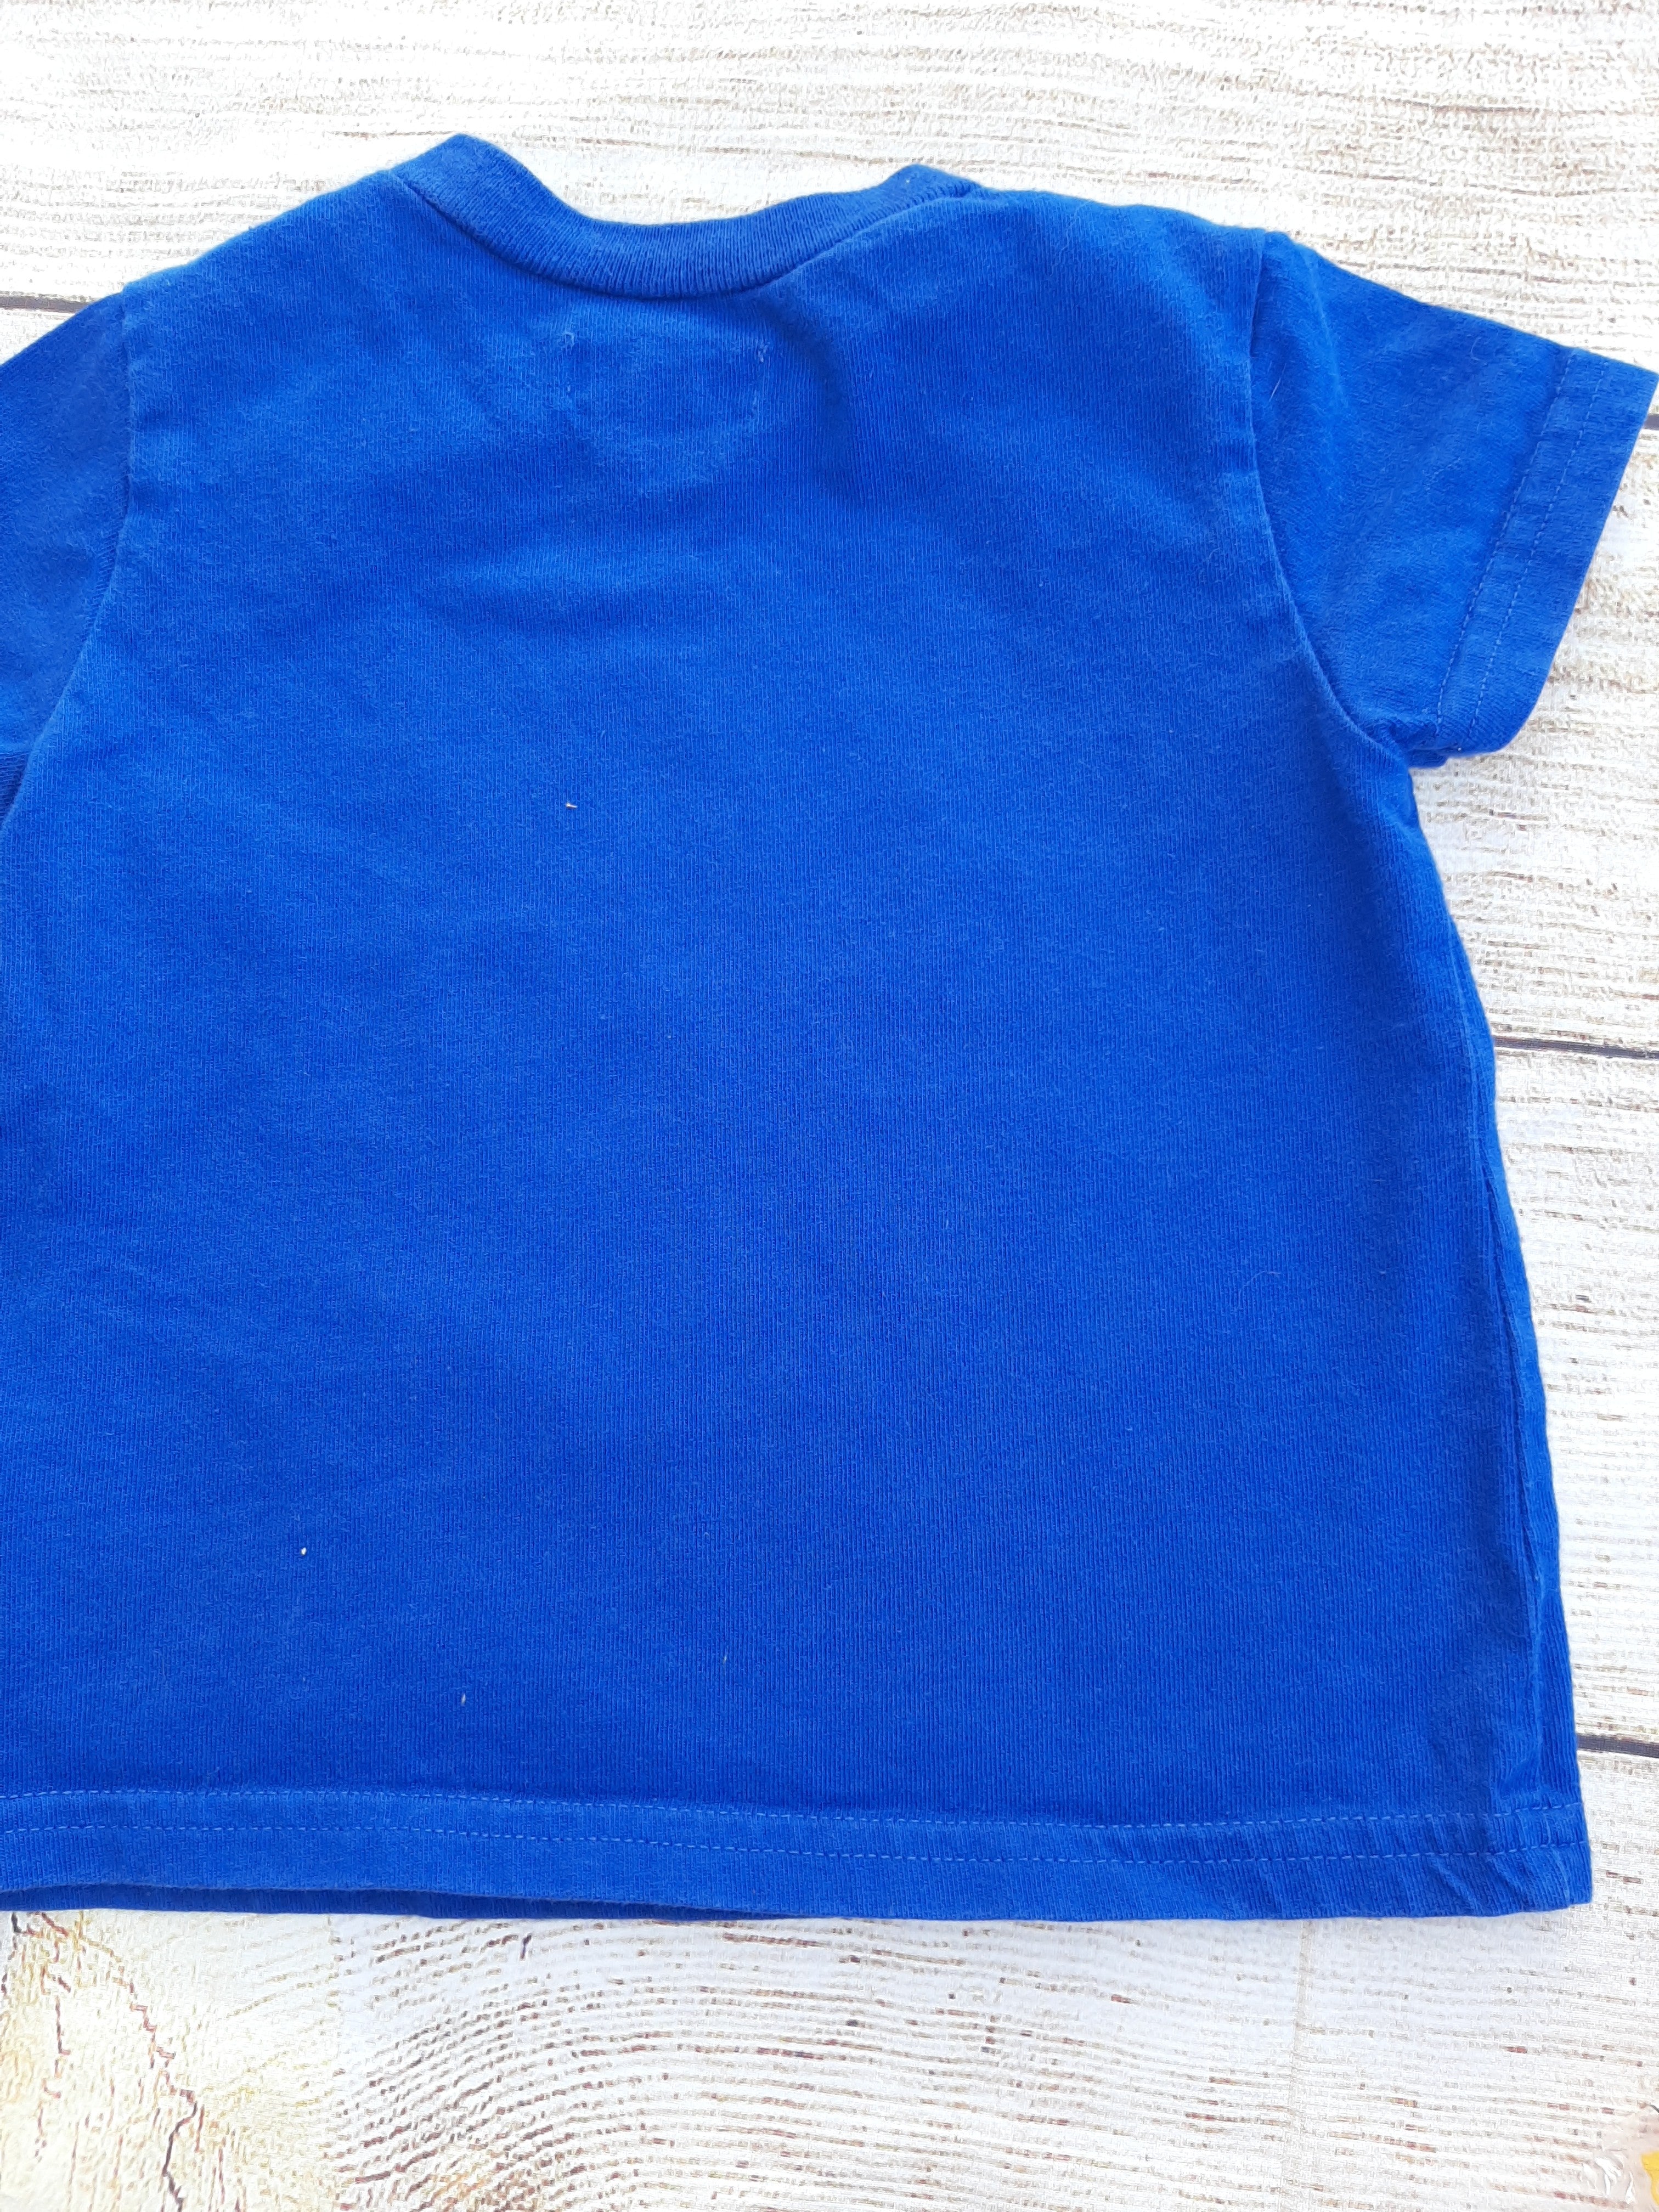 Ralph Lauren Royal Blue T-Shirt sz 9mo